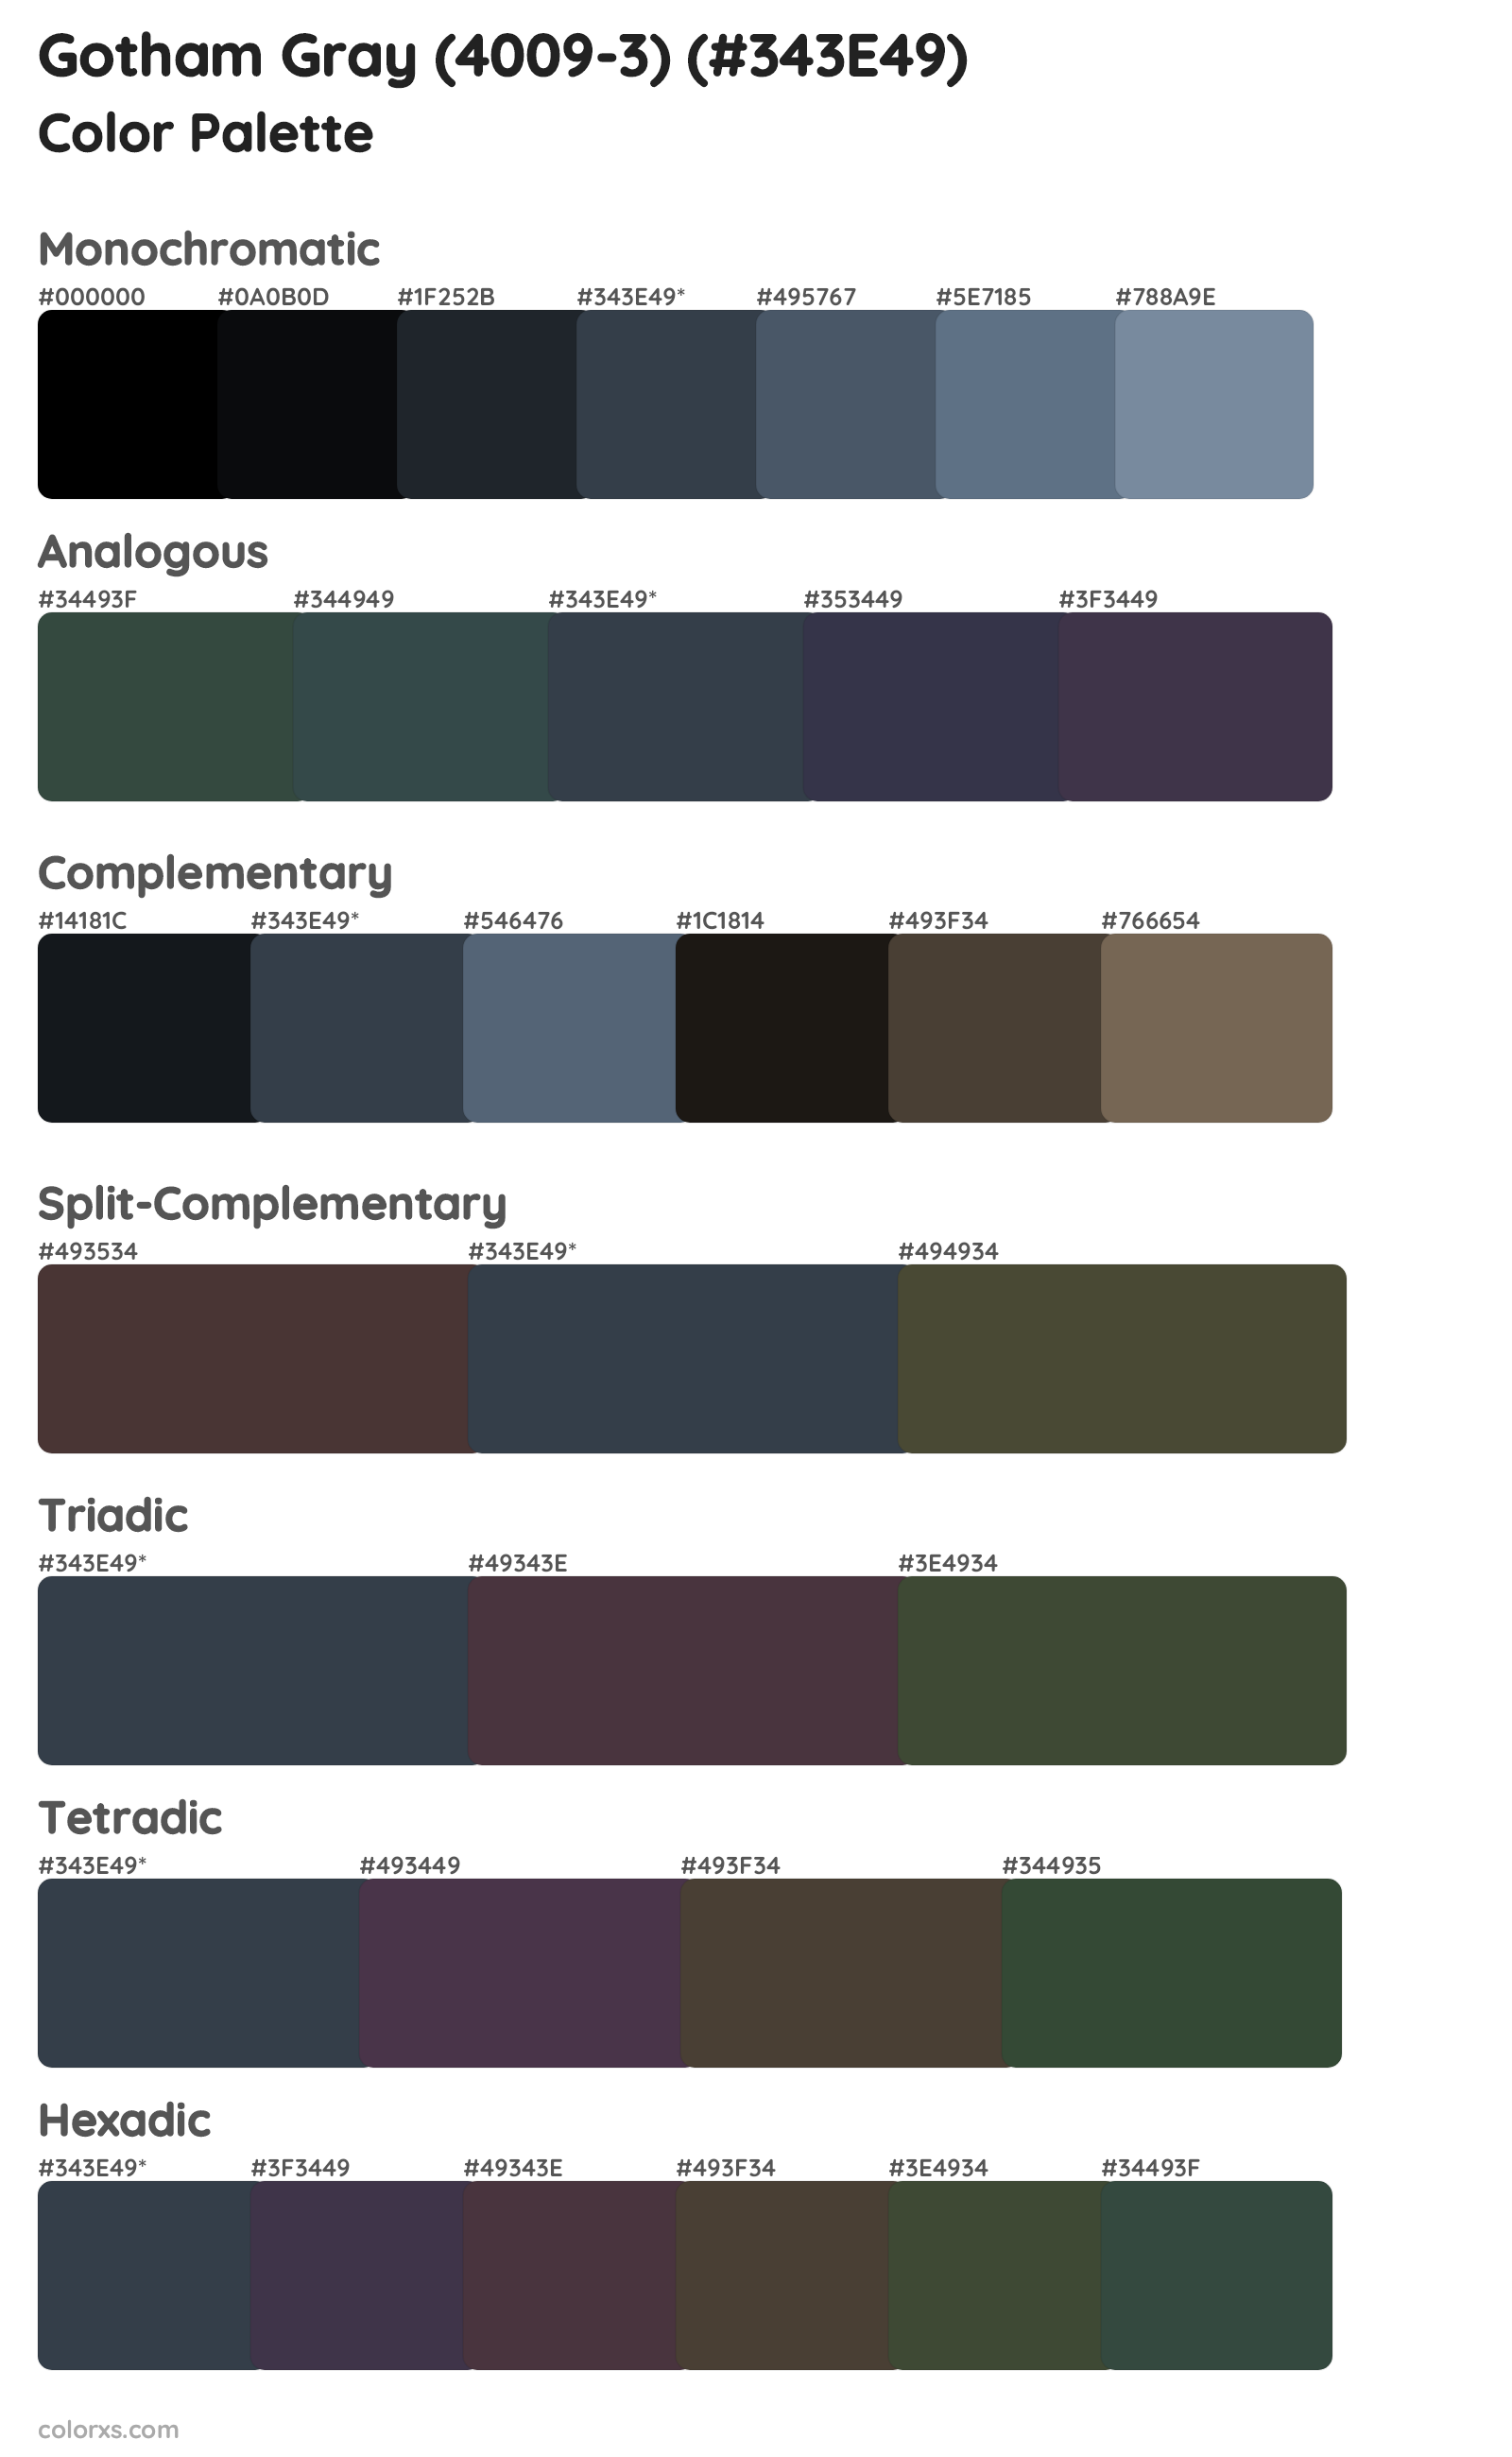 Gotham Gray (4009-3) Color Scheme Palettes